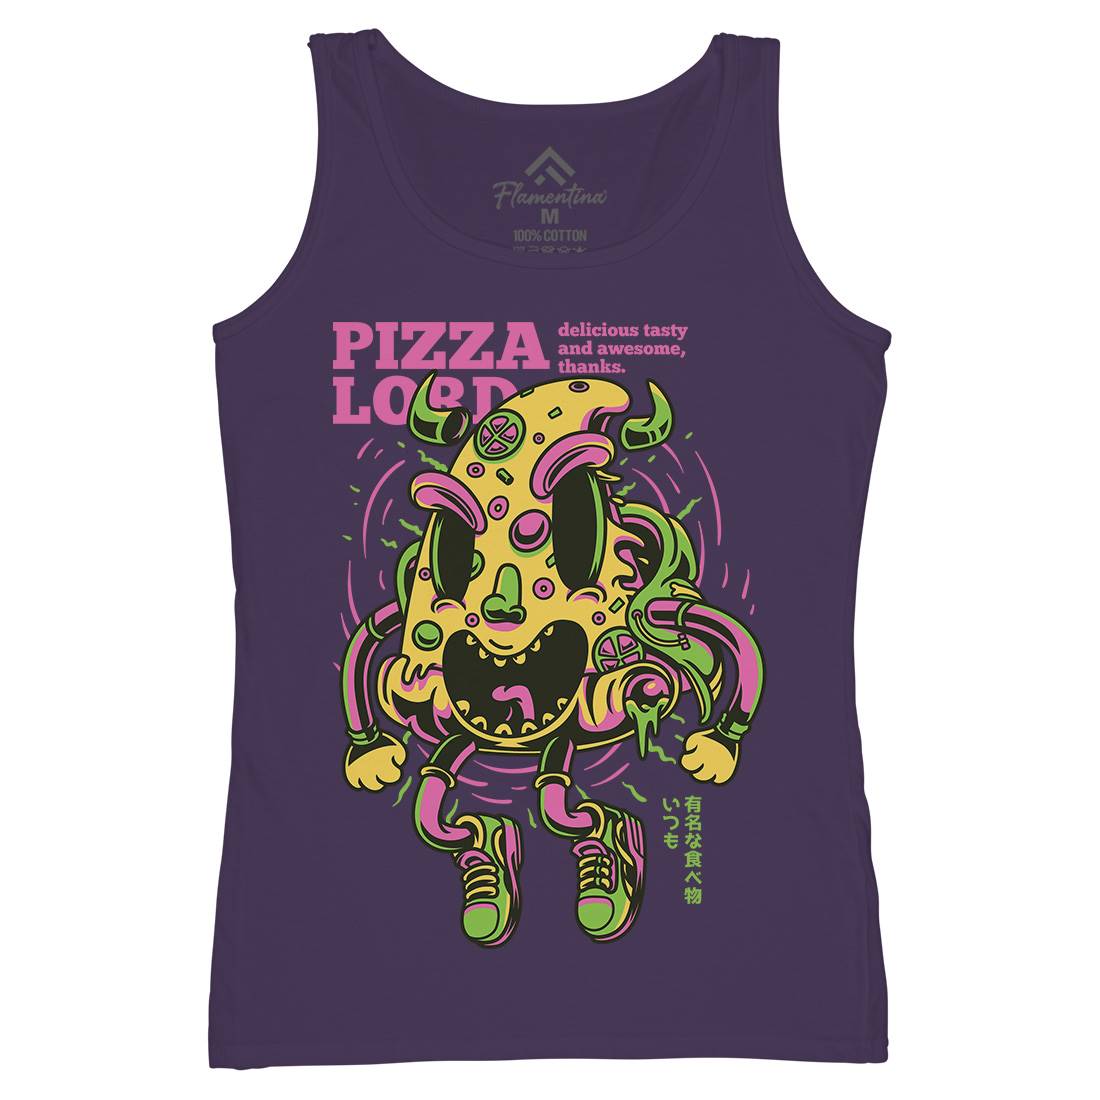 Pizza Lord Womens Organic Tank Top Vest Food D679